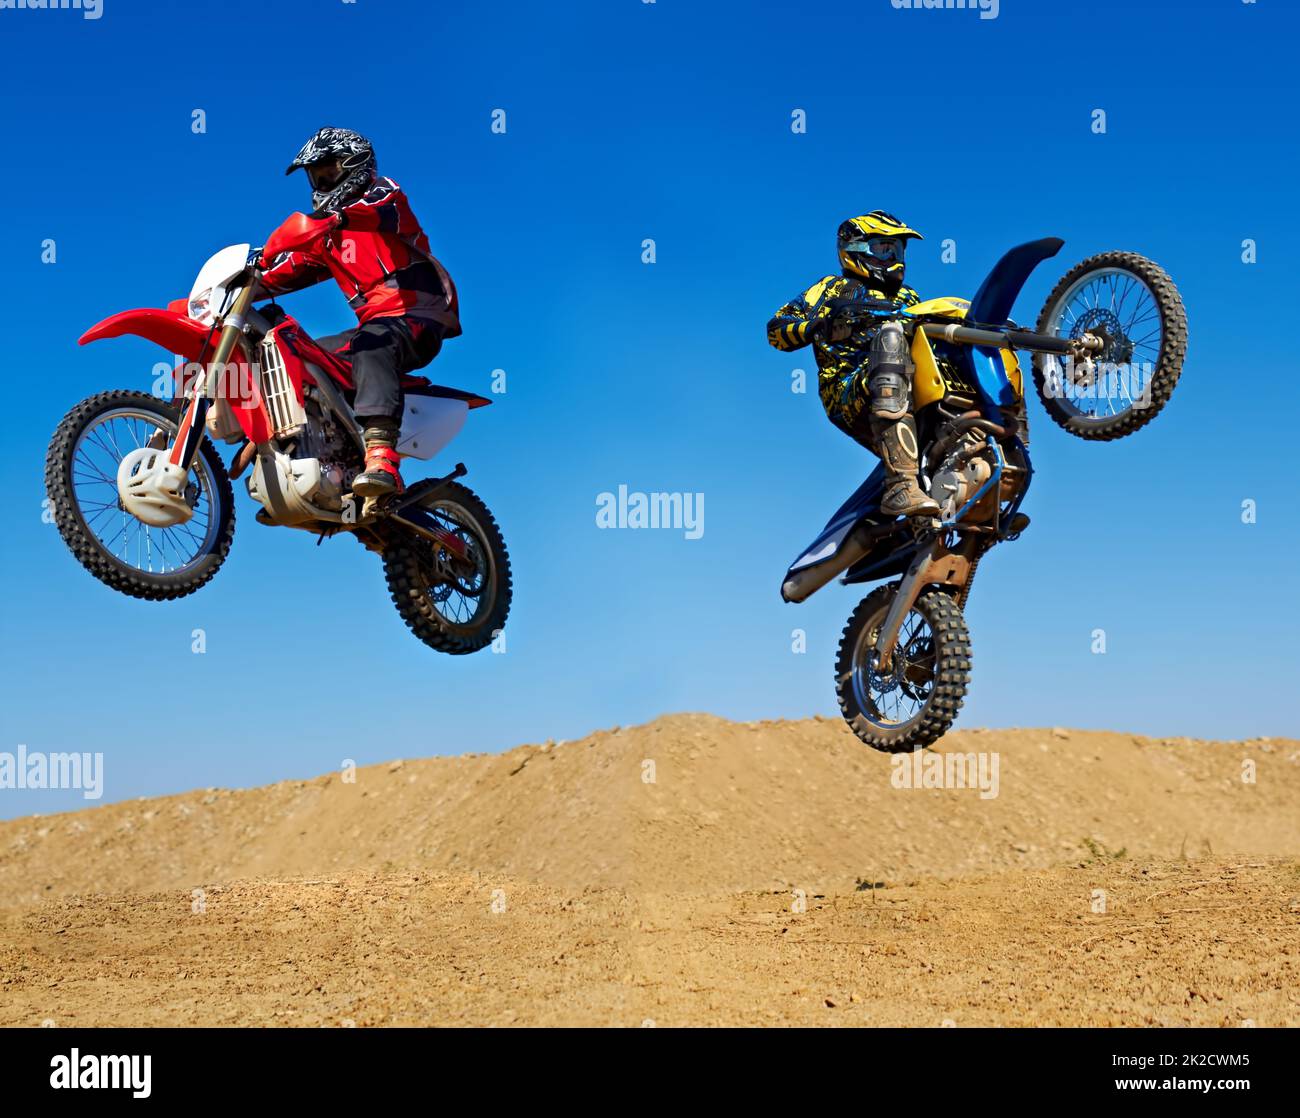 Extrem bis zum Maximum Action-Aufnahme von zwei Dirt Bikern, die in verschiedene Richtungen springen. Stockfoto